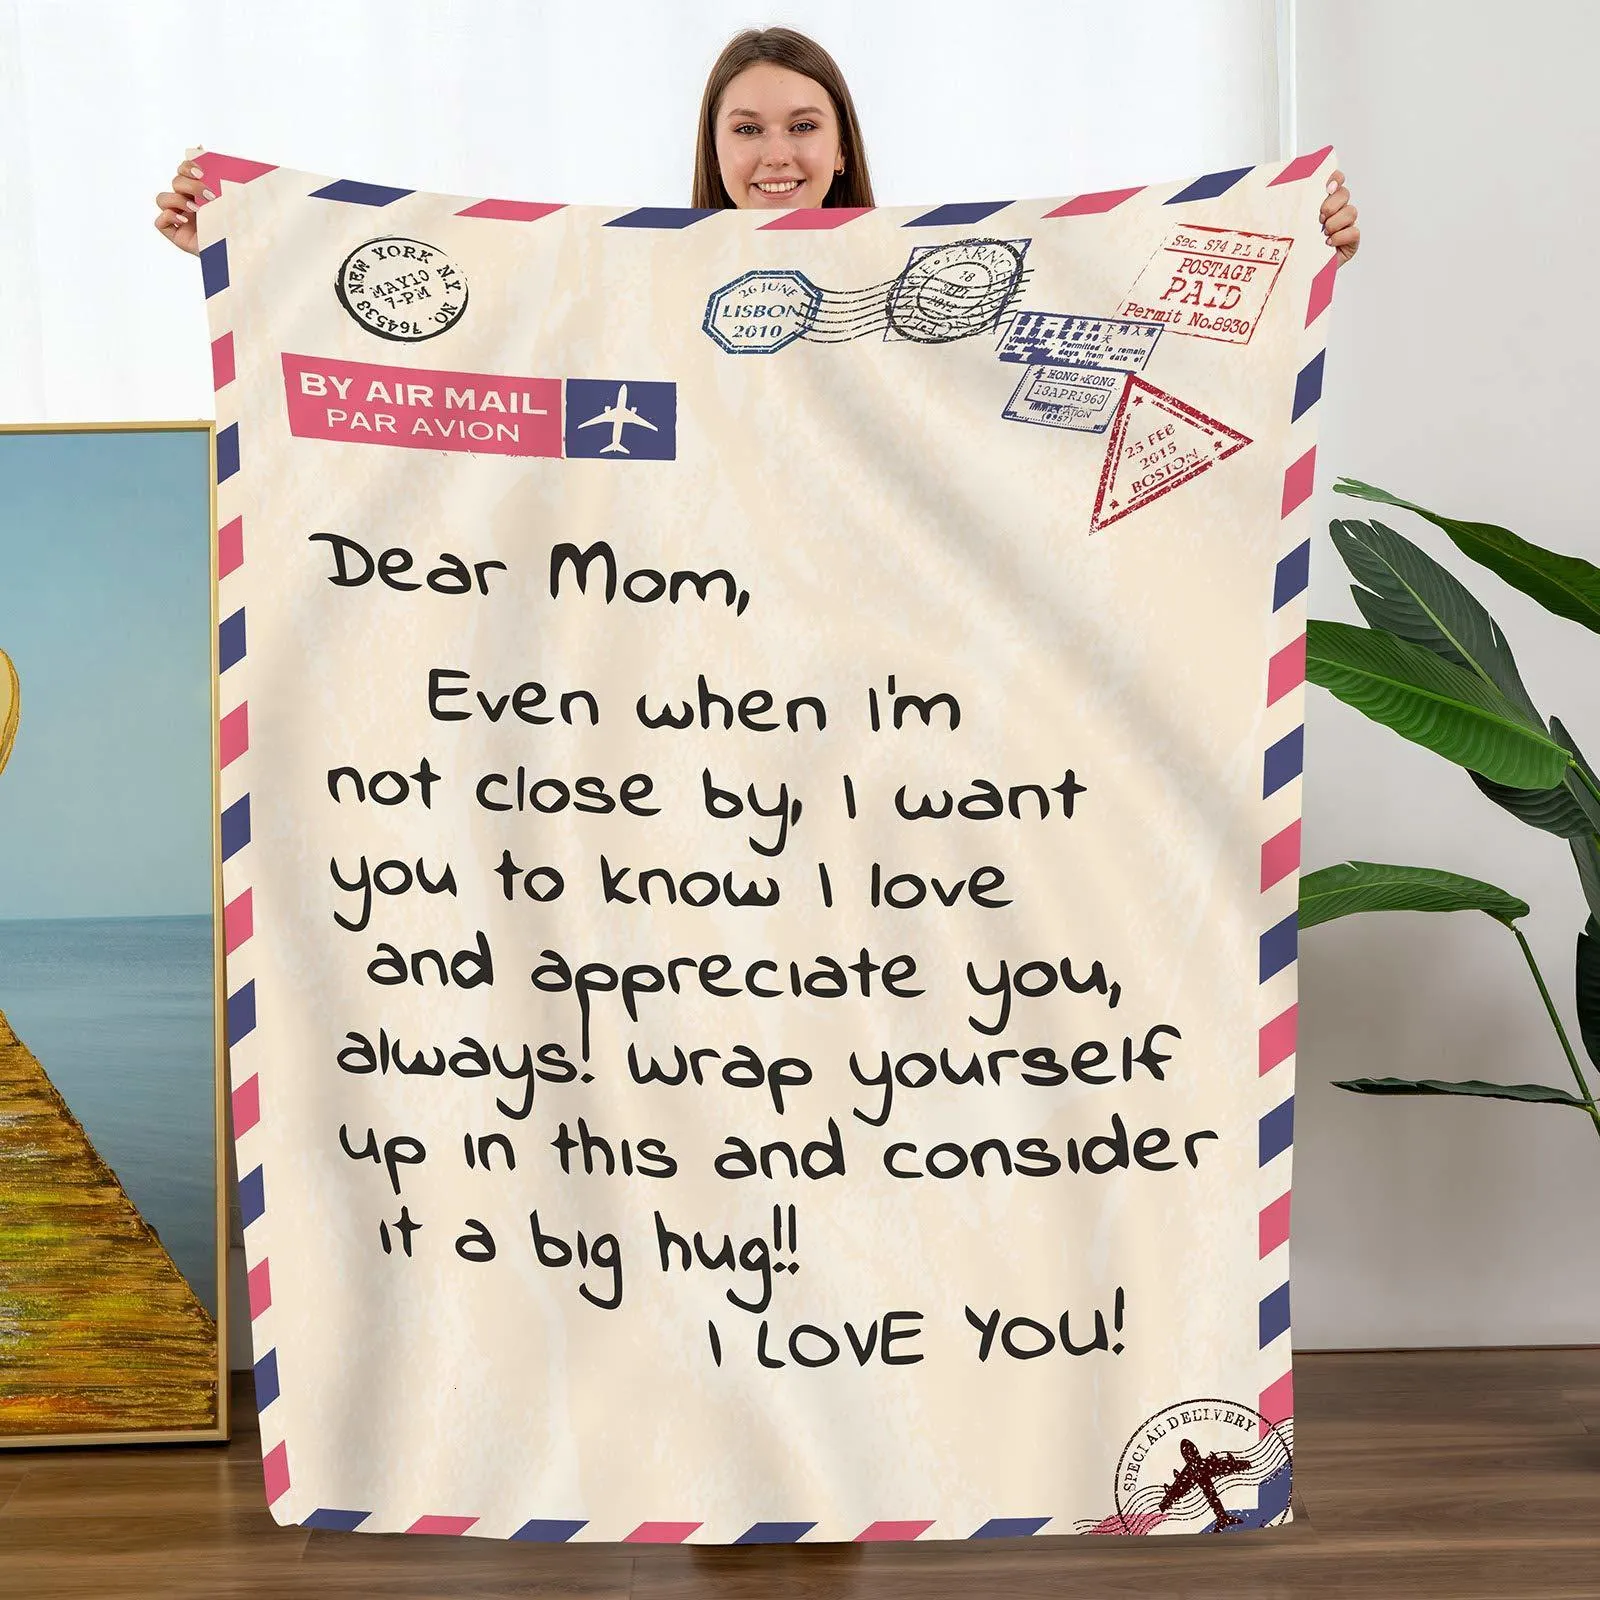 Одеяла подарки для мамы бросают одеяло к моему от дочери сын День рождения мягкая кровать фланелевая мать 230615